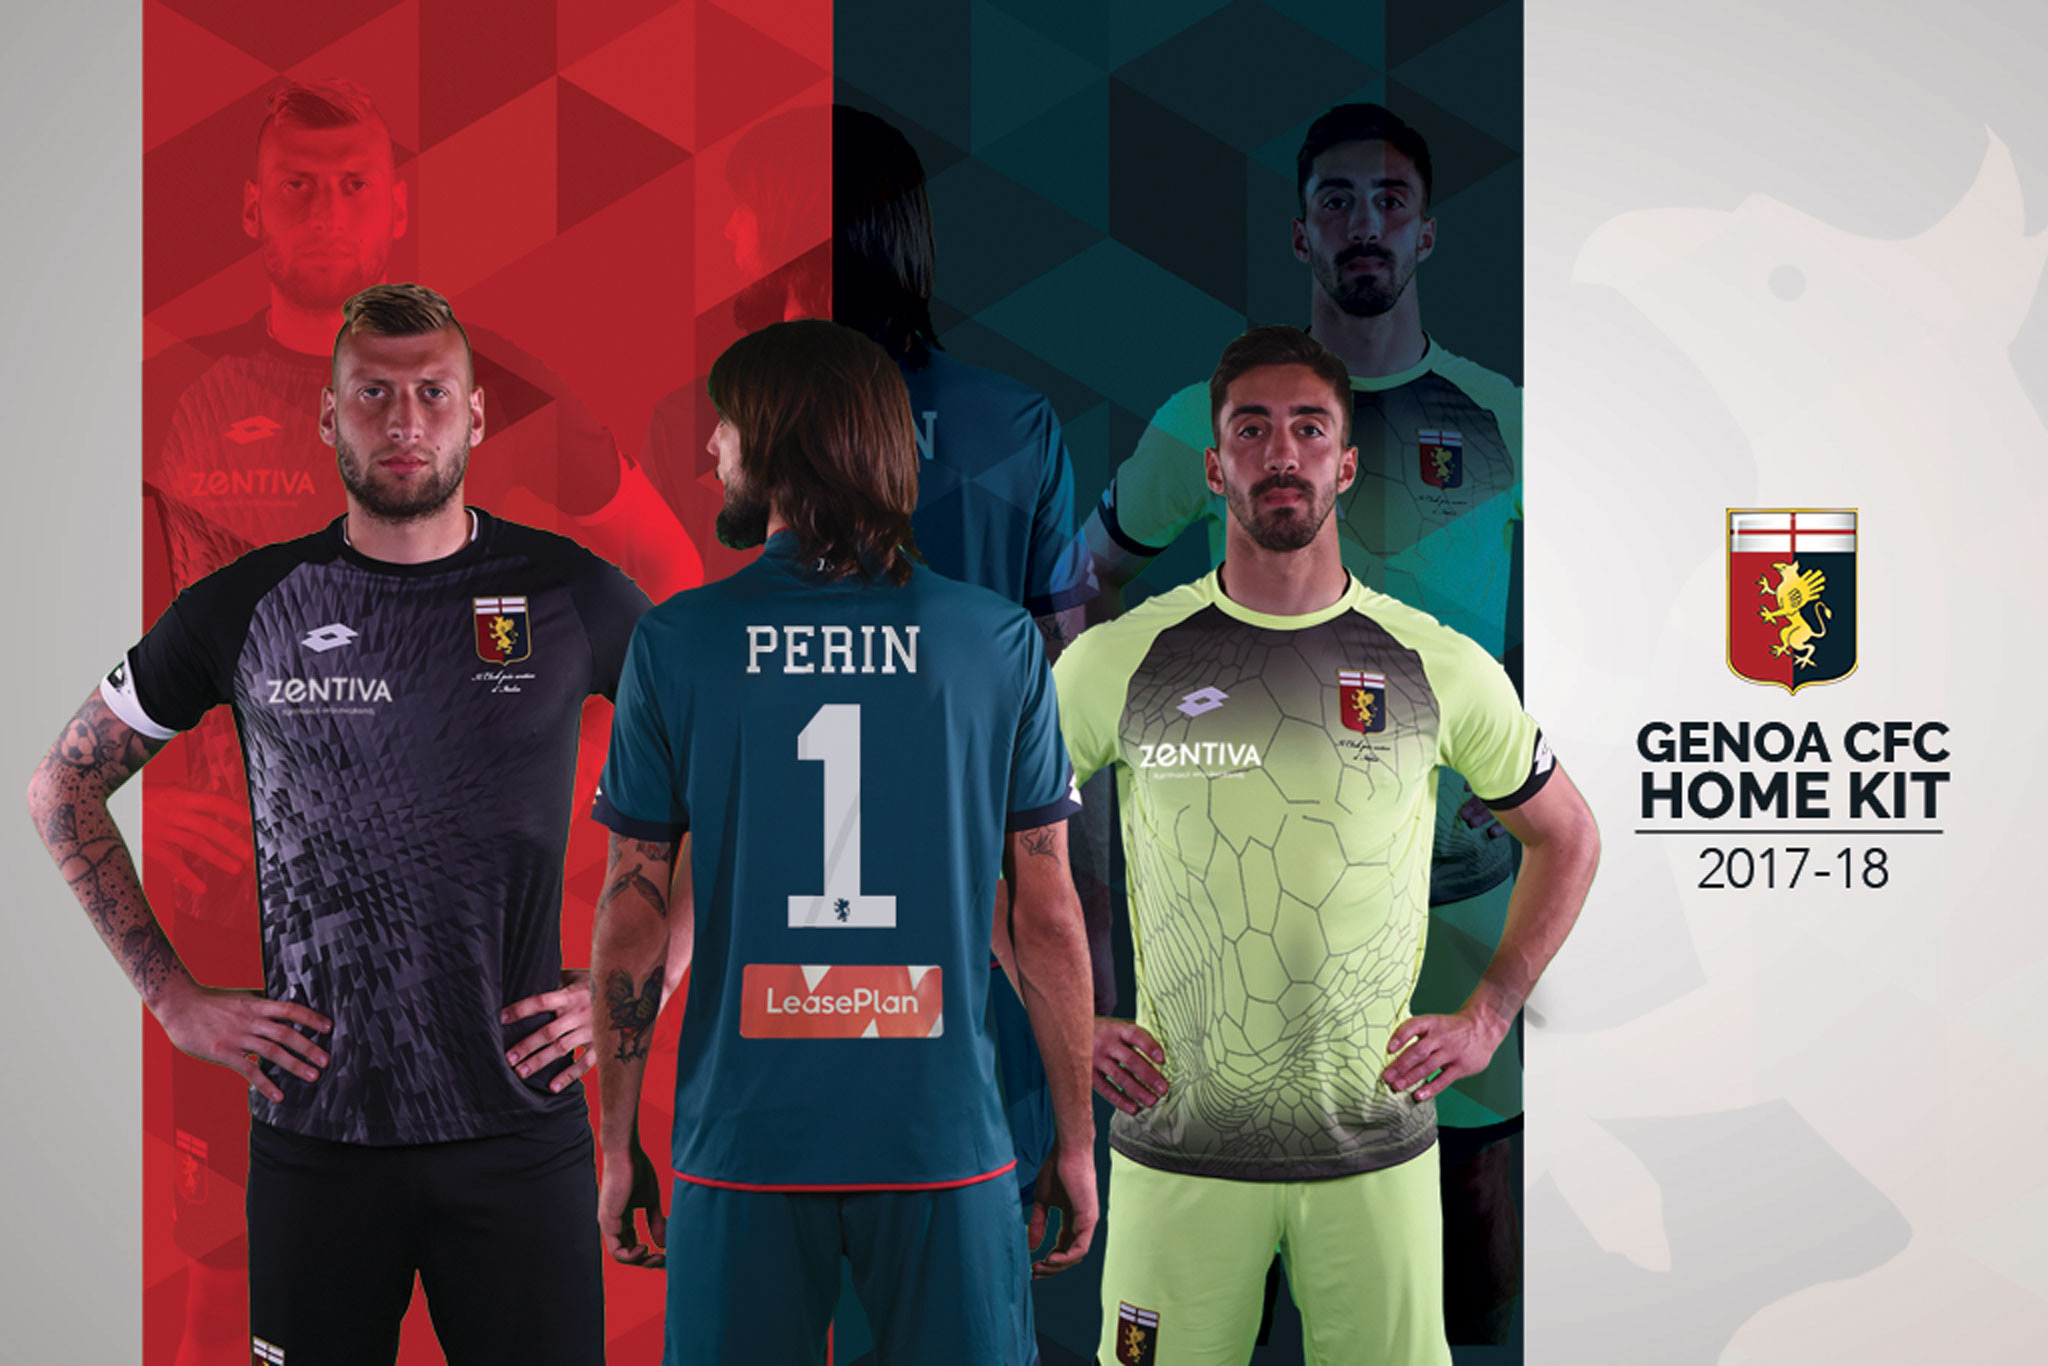 Nouveaux maillots Genoa CFC 2017-18